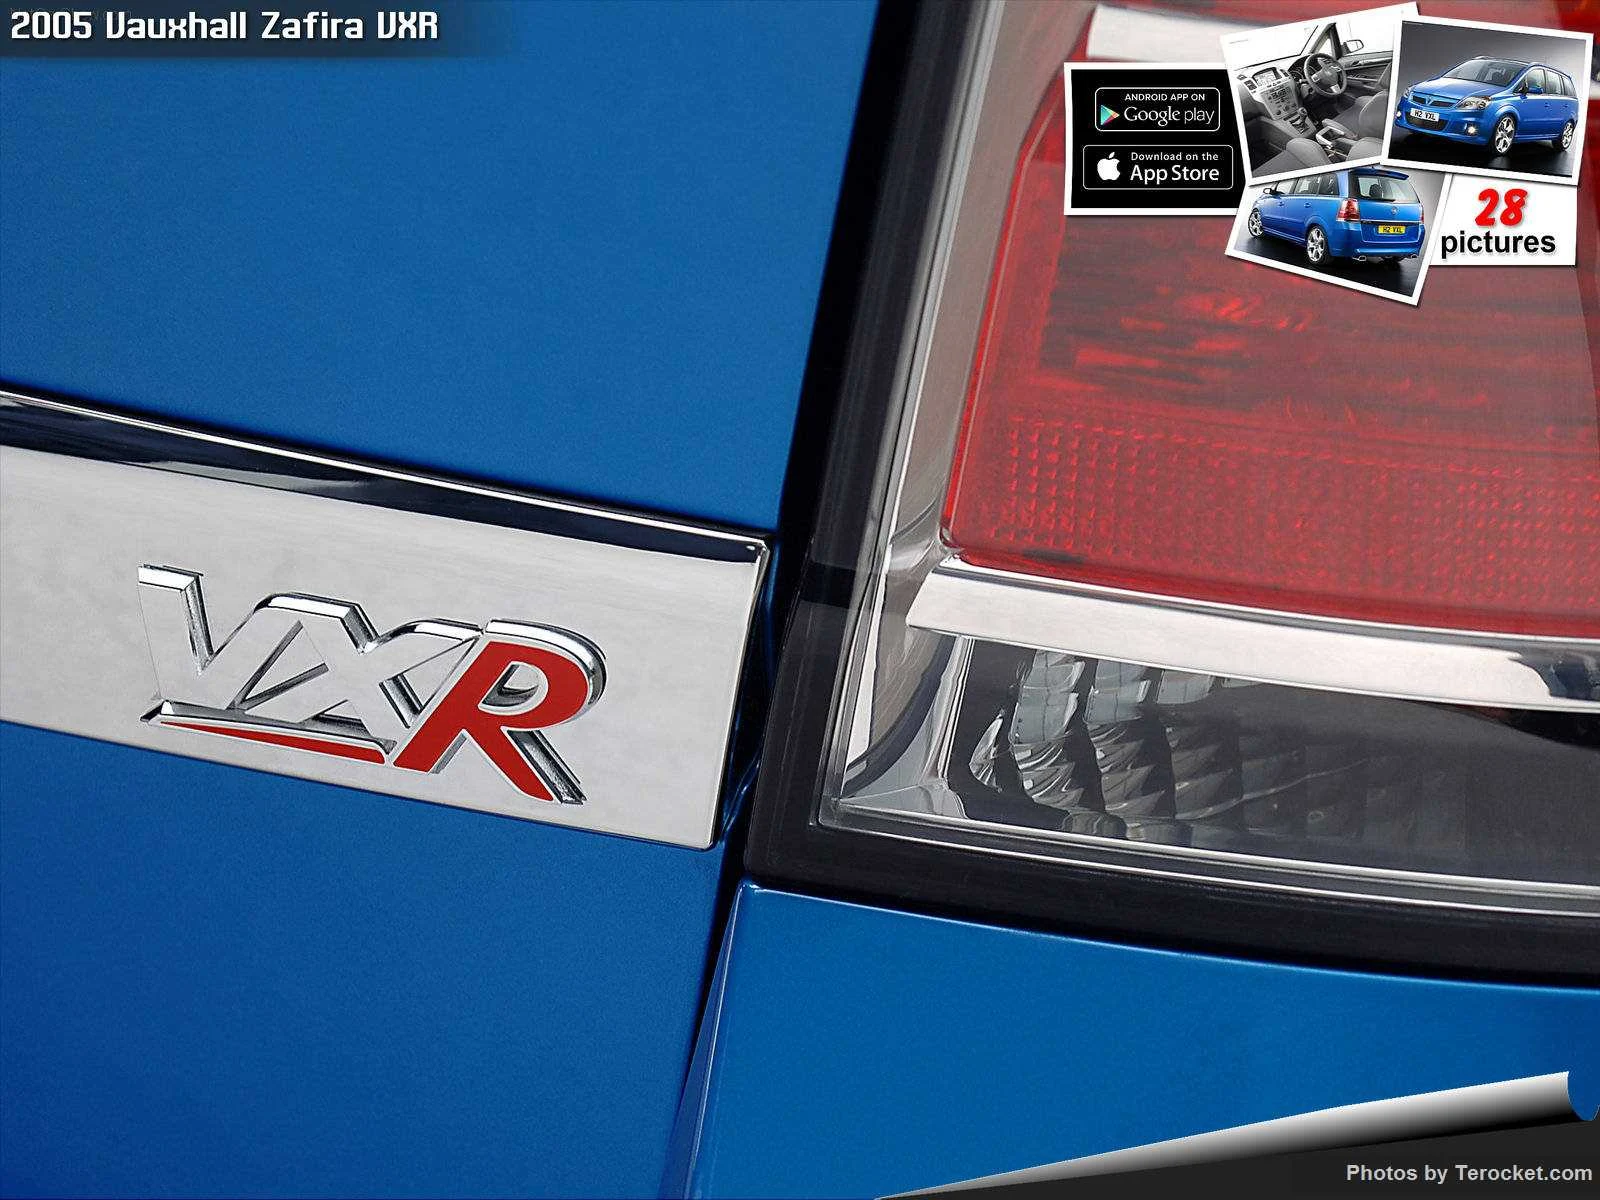 Hình ảnh xe ô tô Vauxhall Zafira VXR 2005 & nội ngoại thất